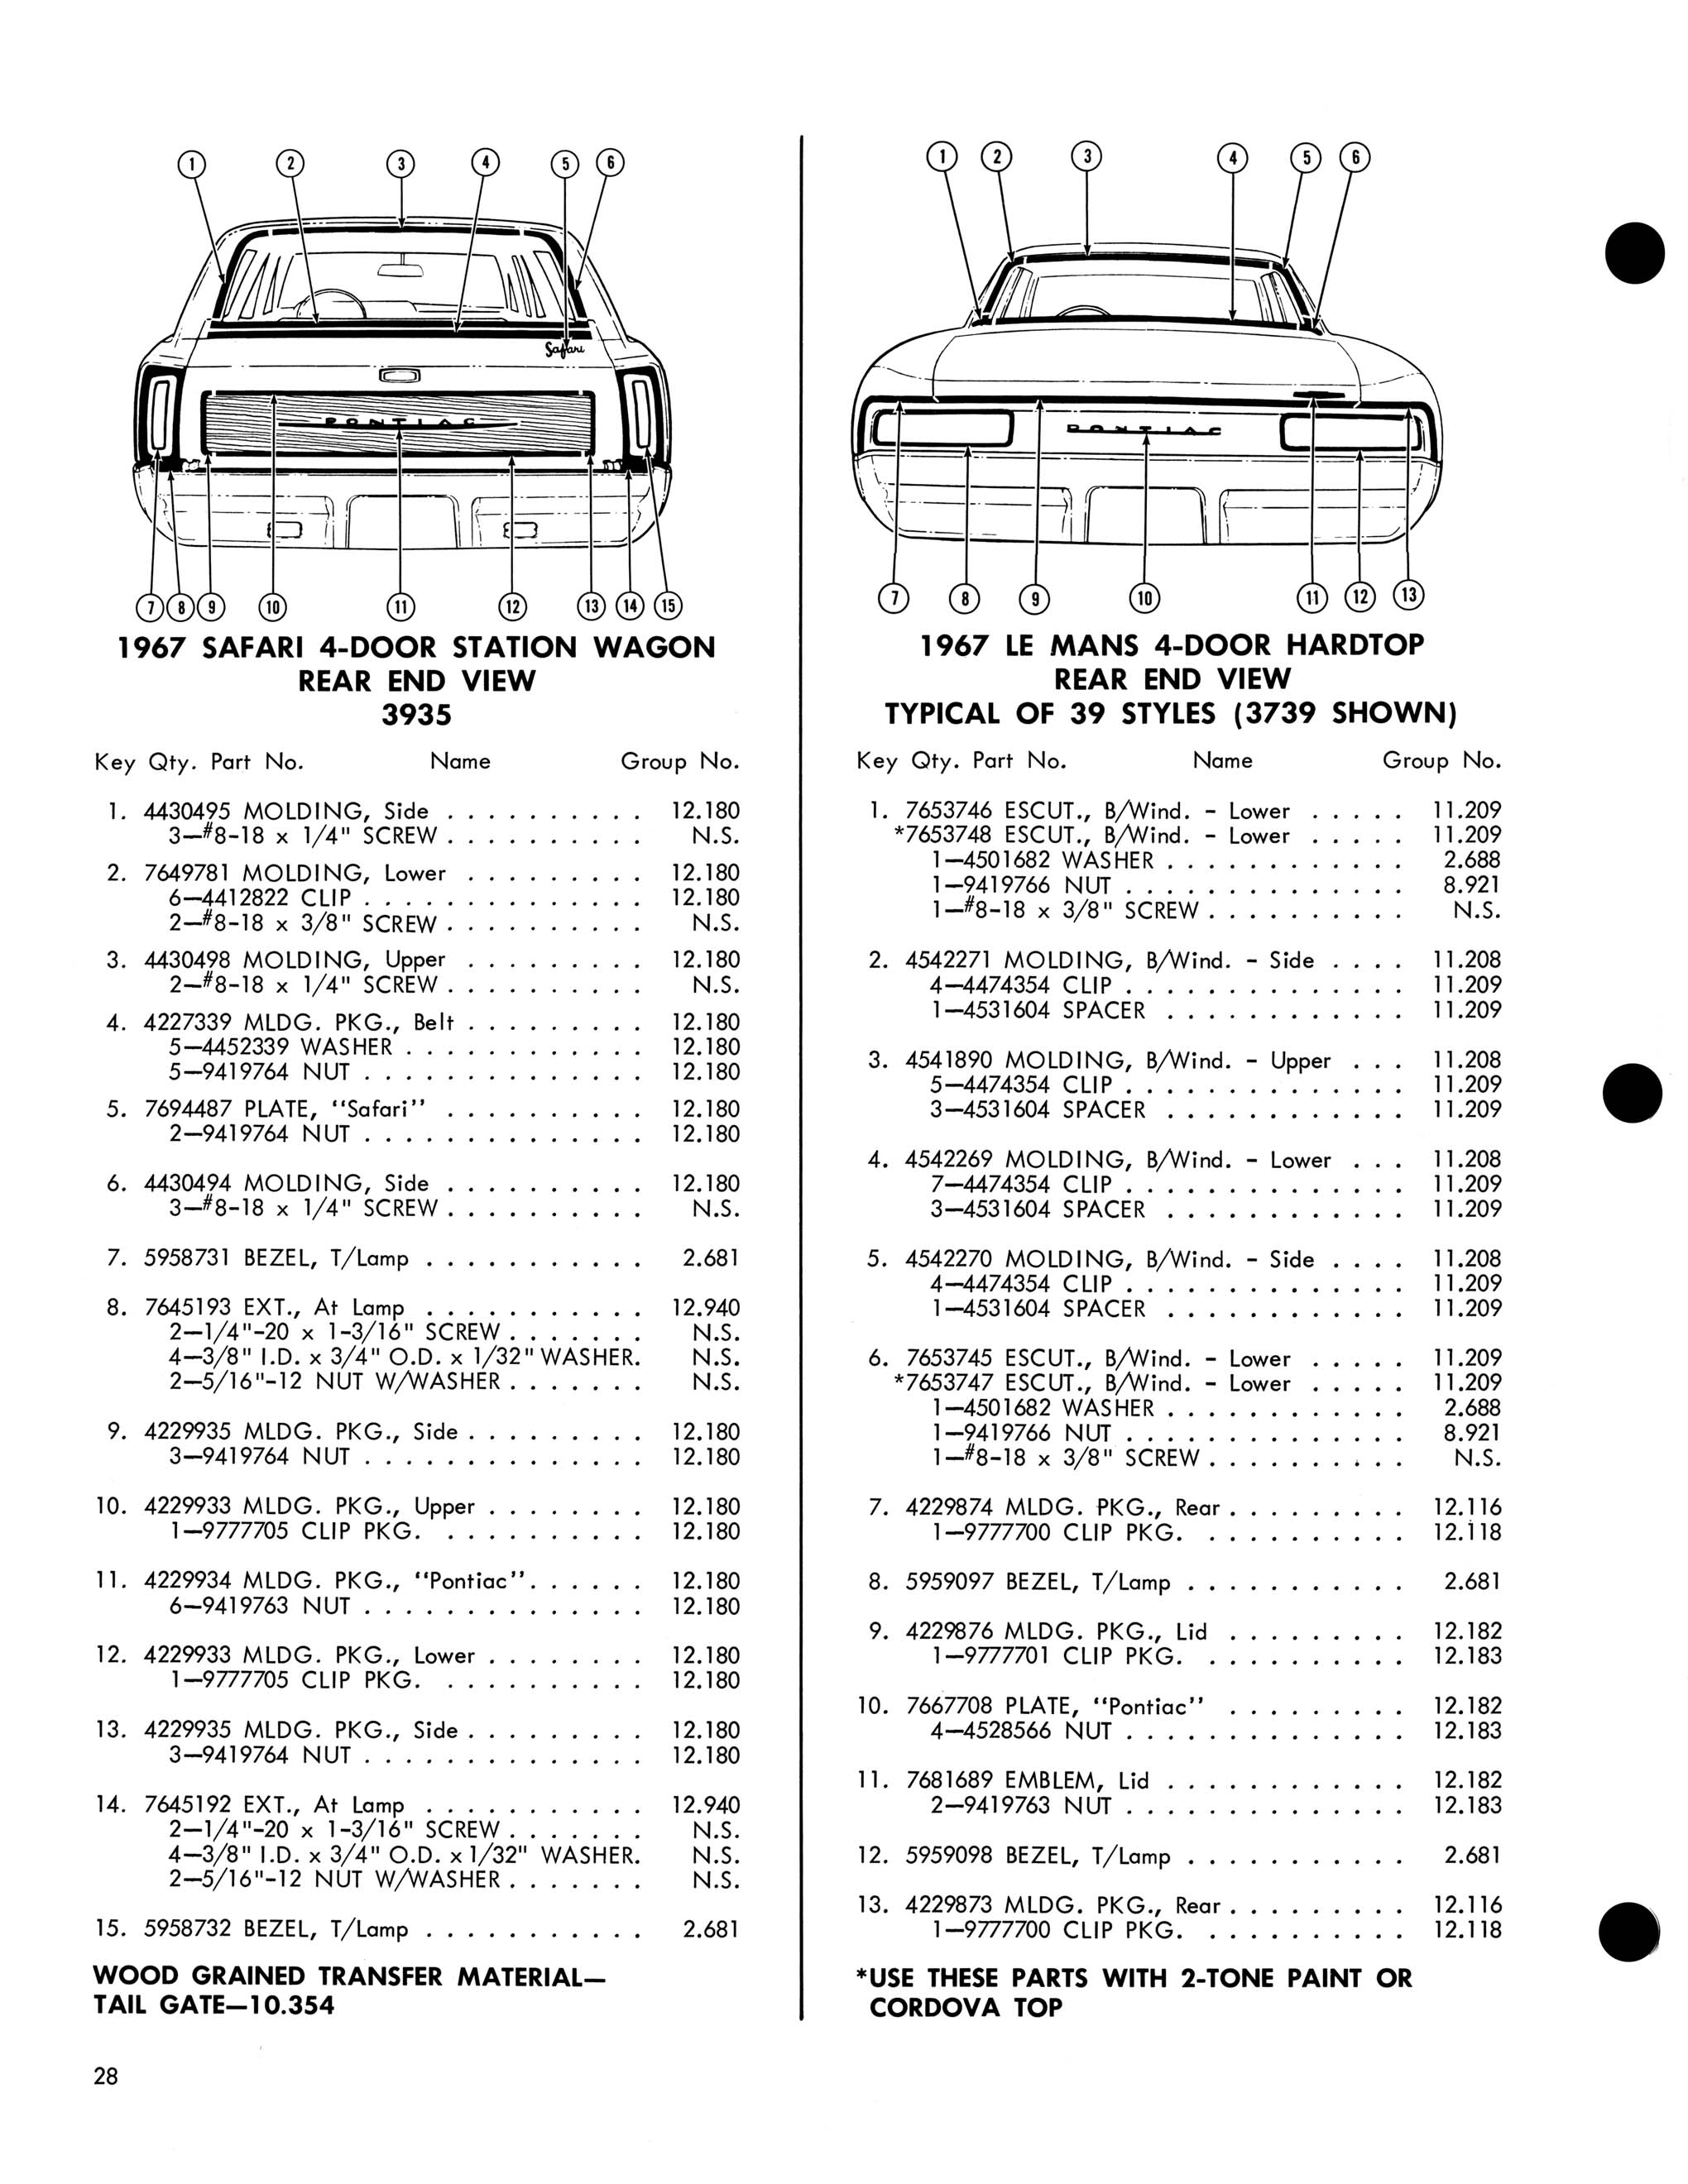 1967 Pontiac Molding and Clip Catalog-28